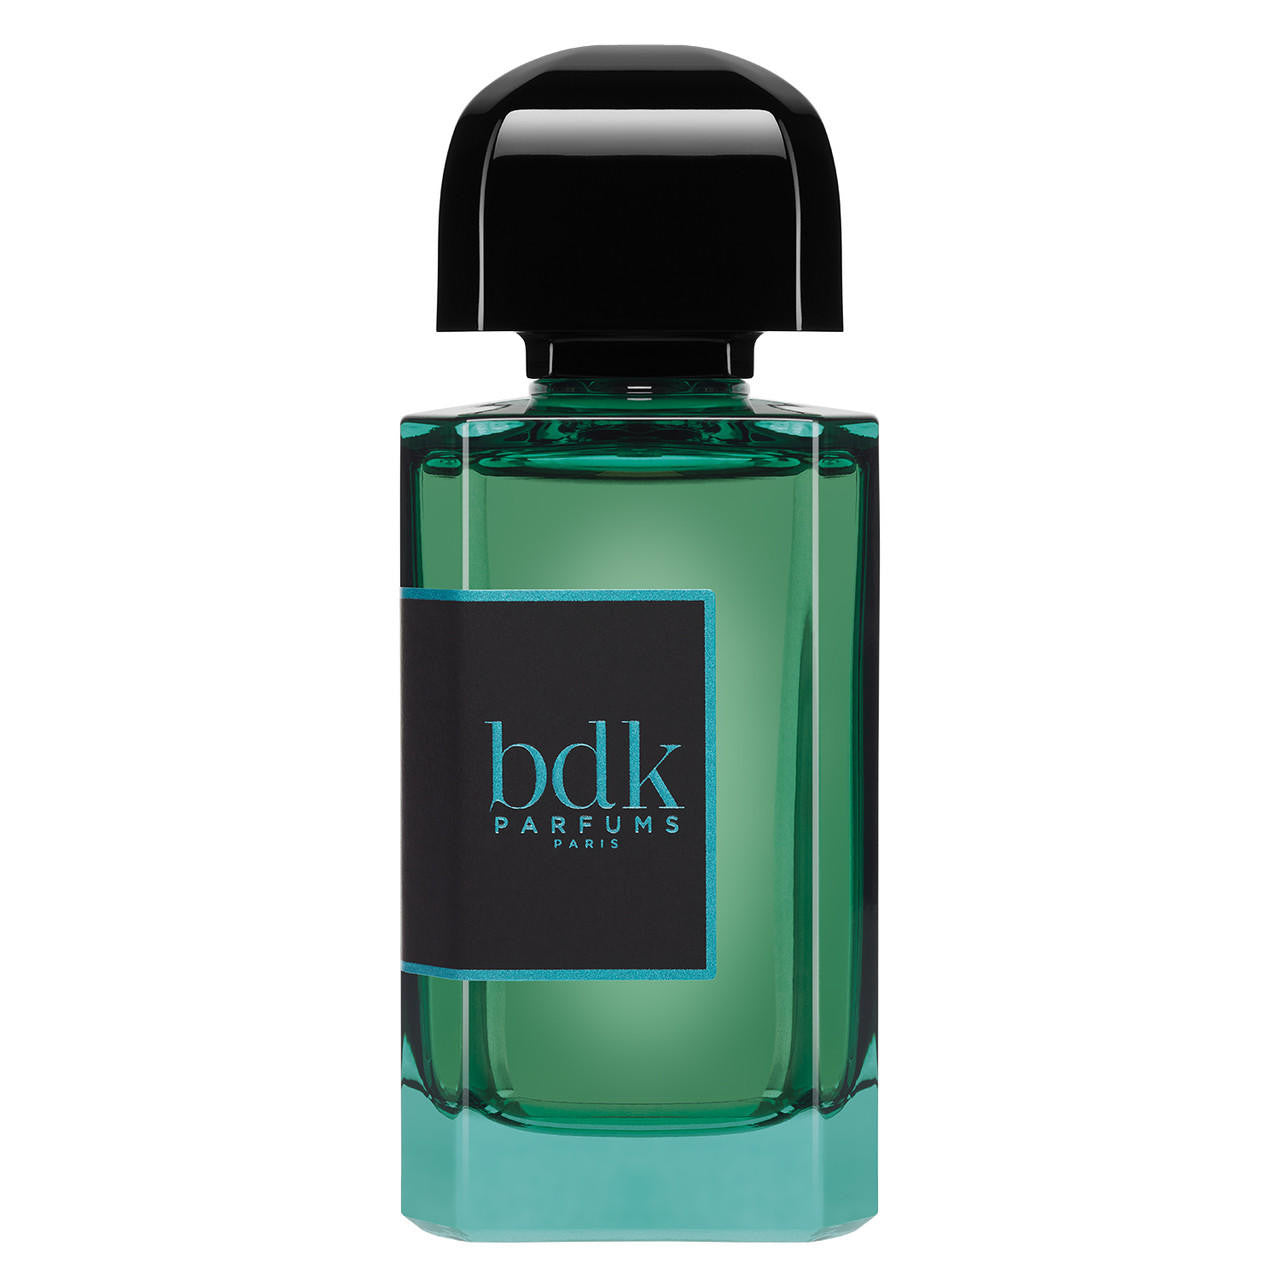  BDK Parfums Pas Ce Soir Extrait de Parfum 